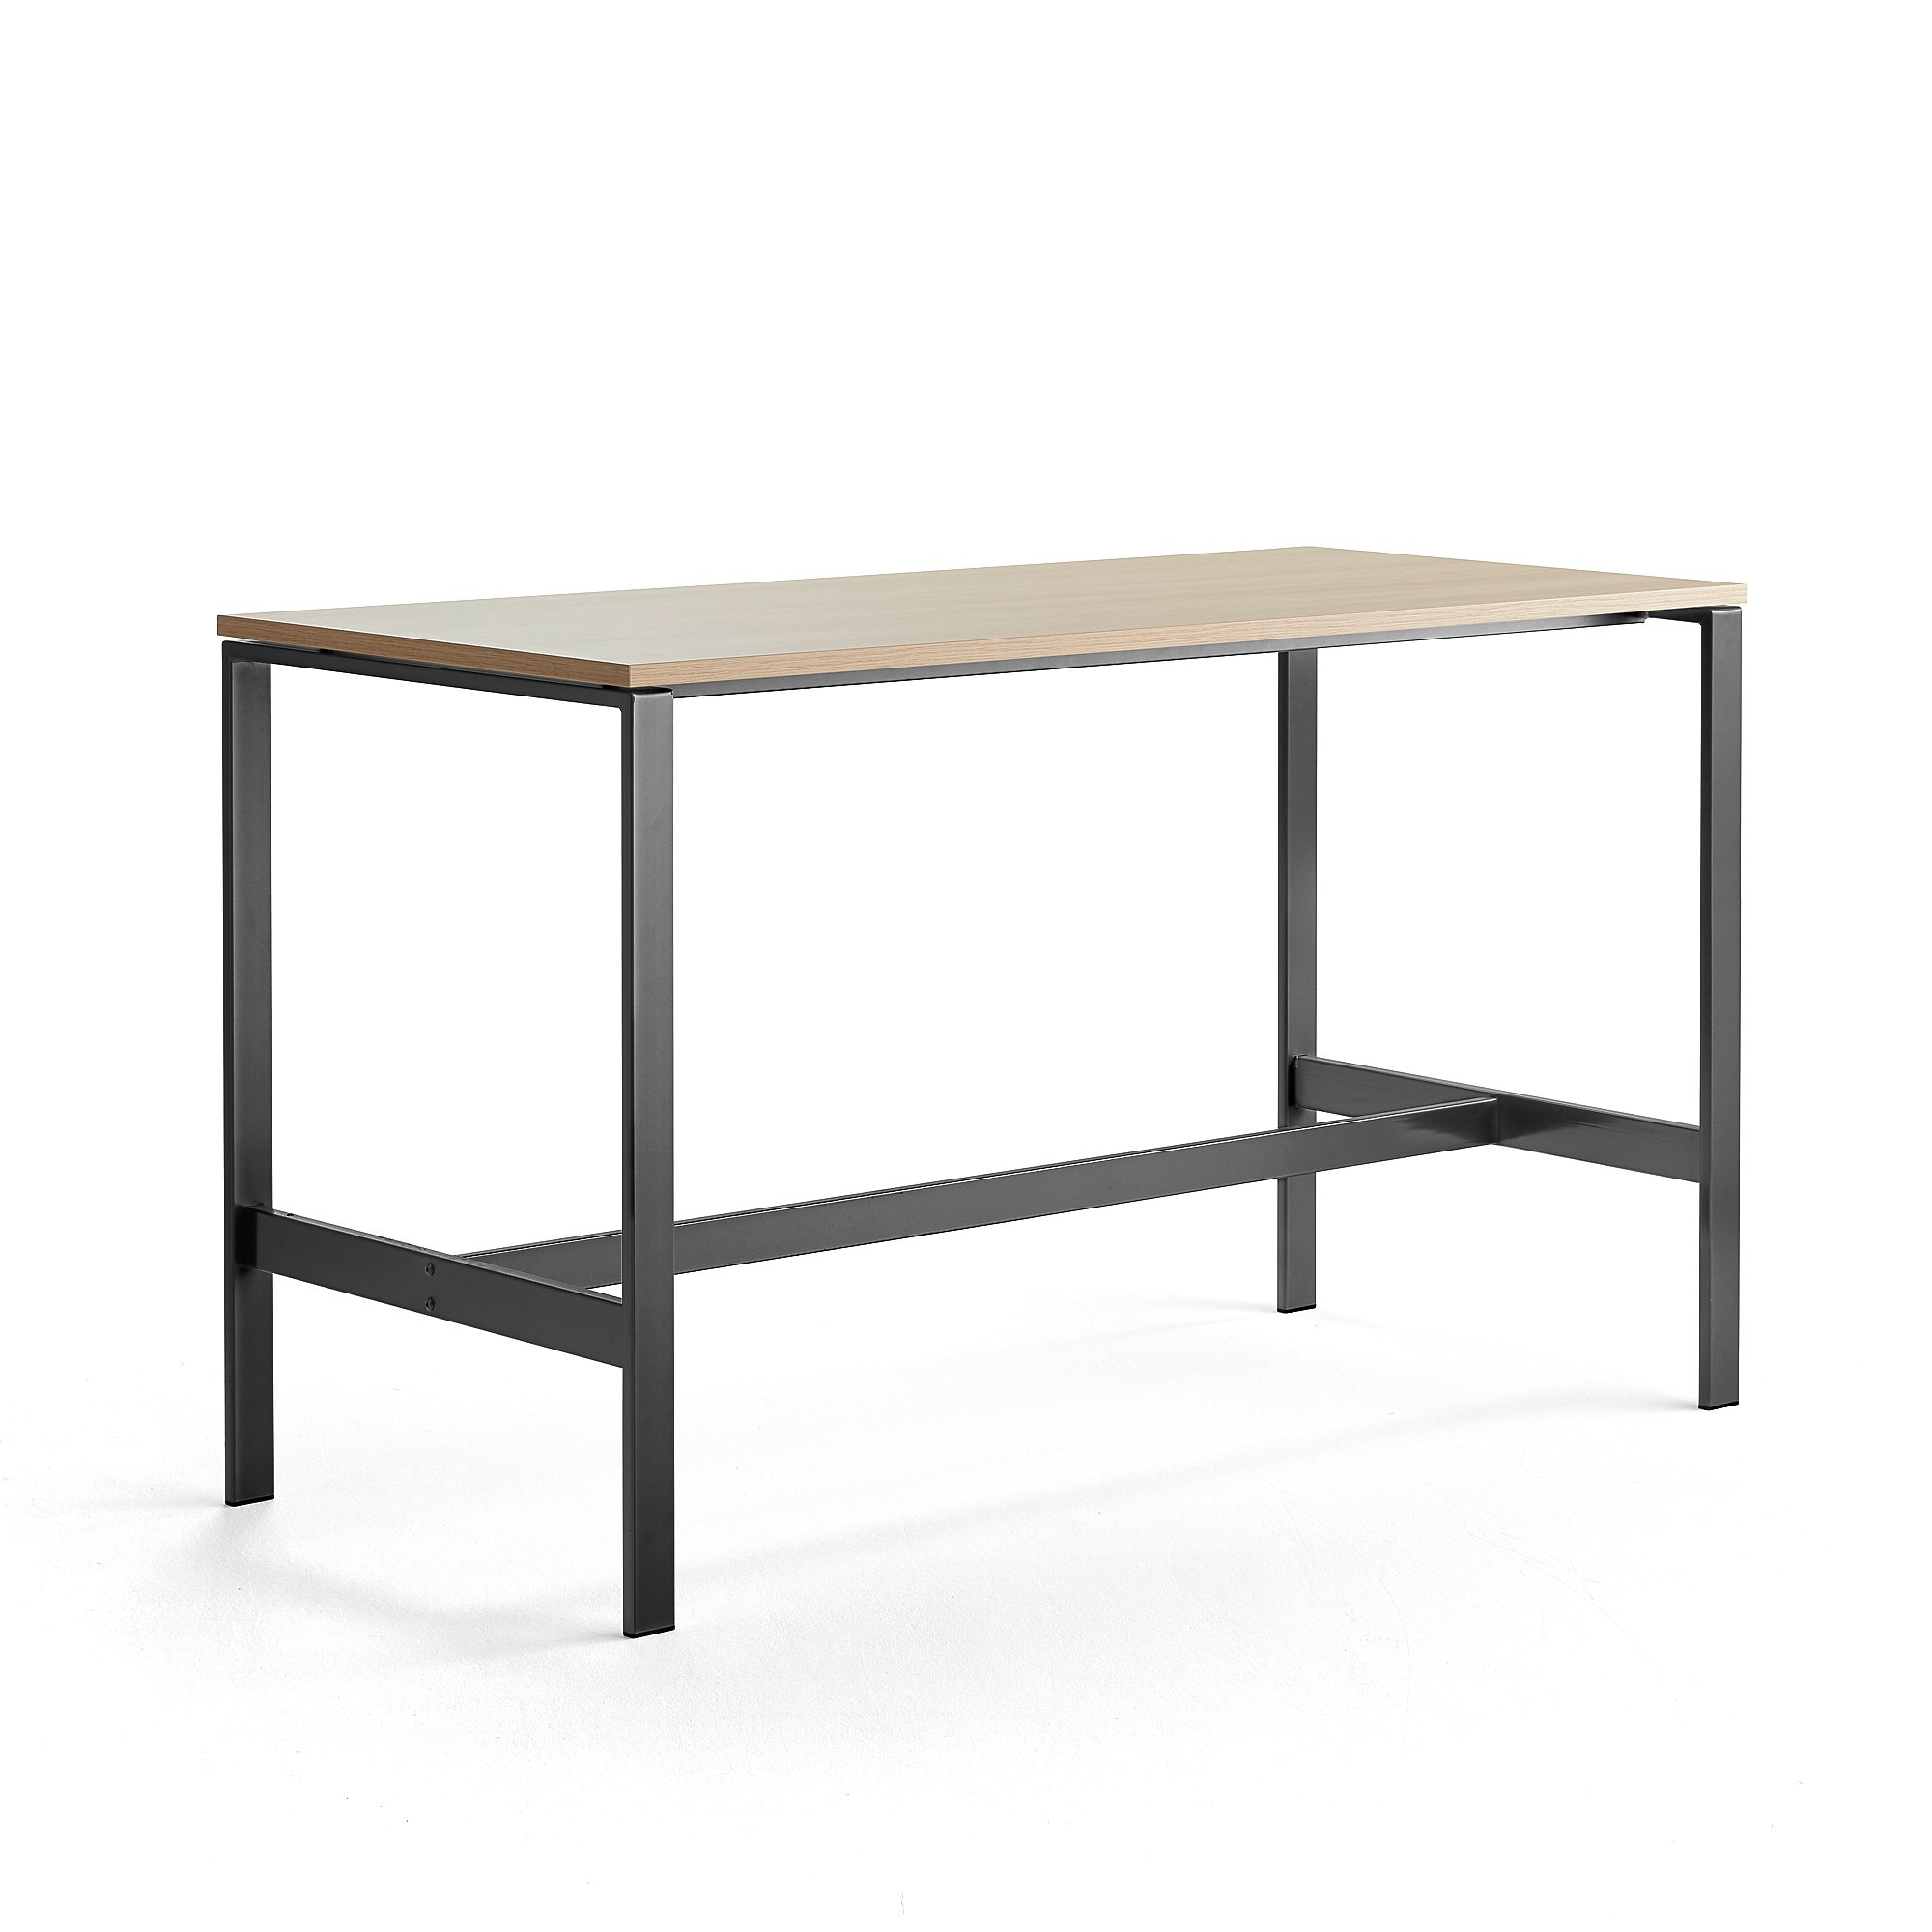 Stůl VARIOUS, 1800x800 mm, výška 1050 mm, černé nohy, dub